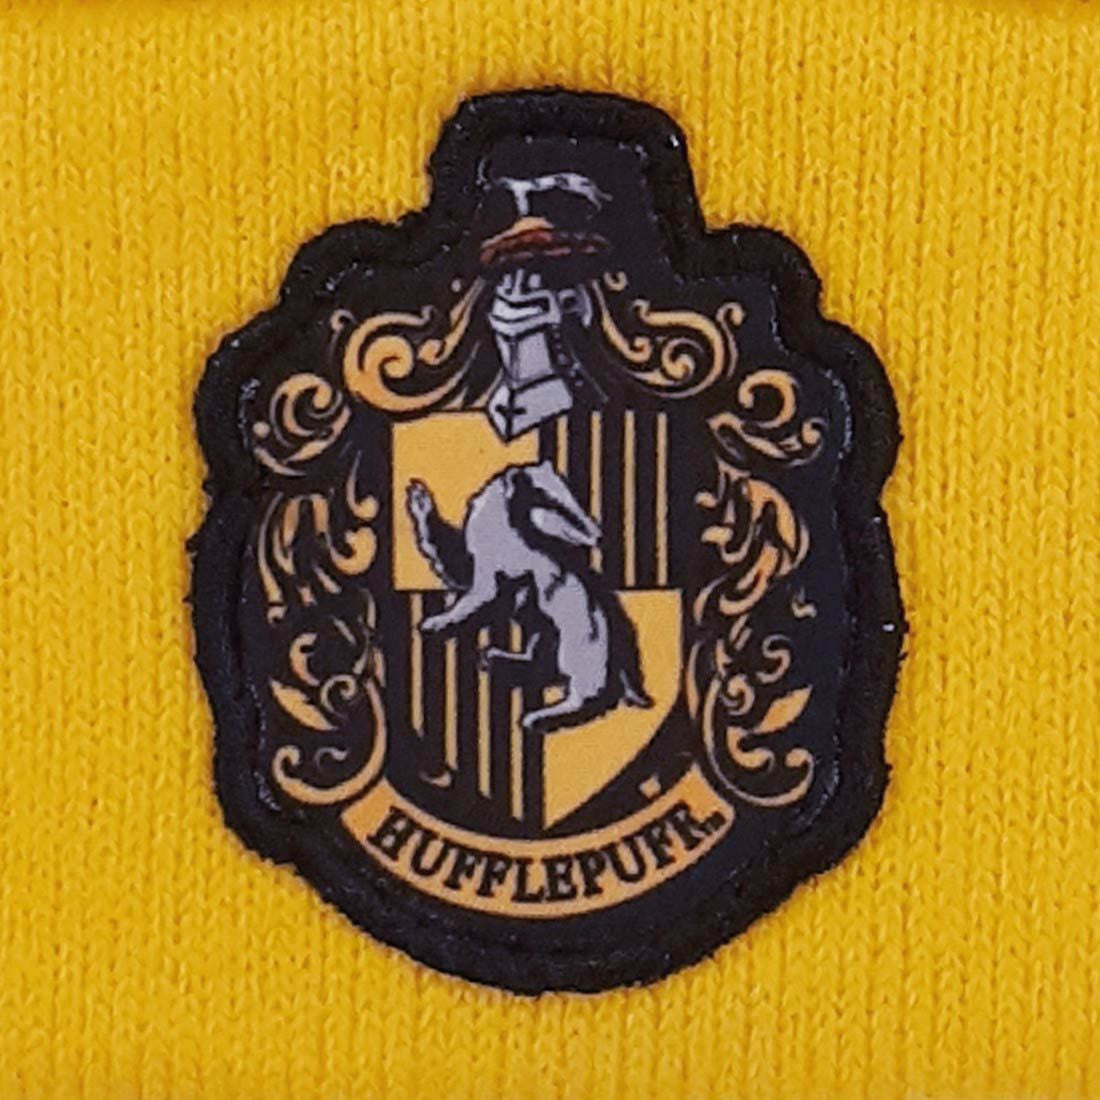 Bonnet Harry Potter - Hufflepuff School